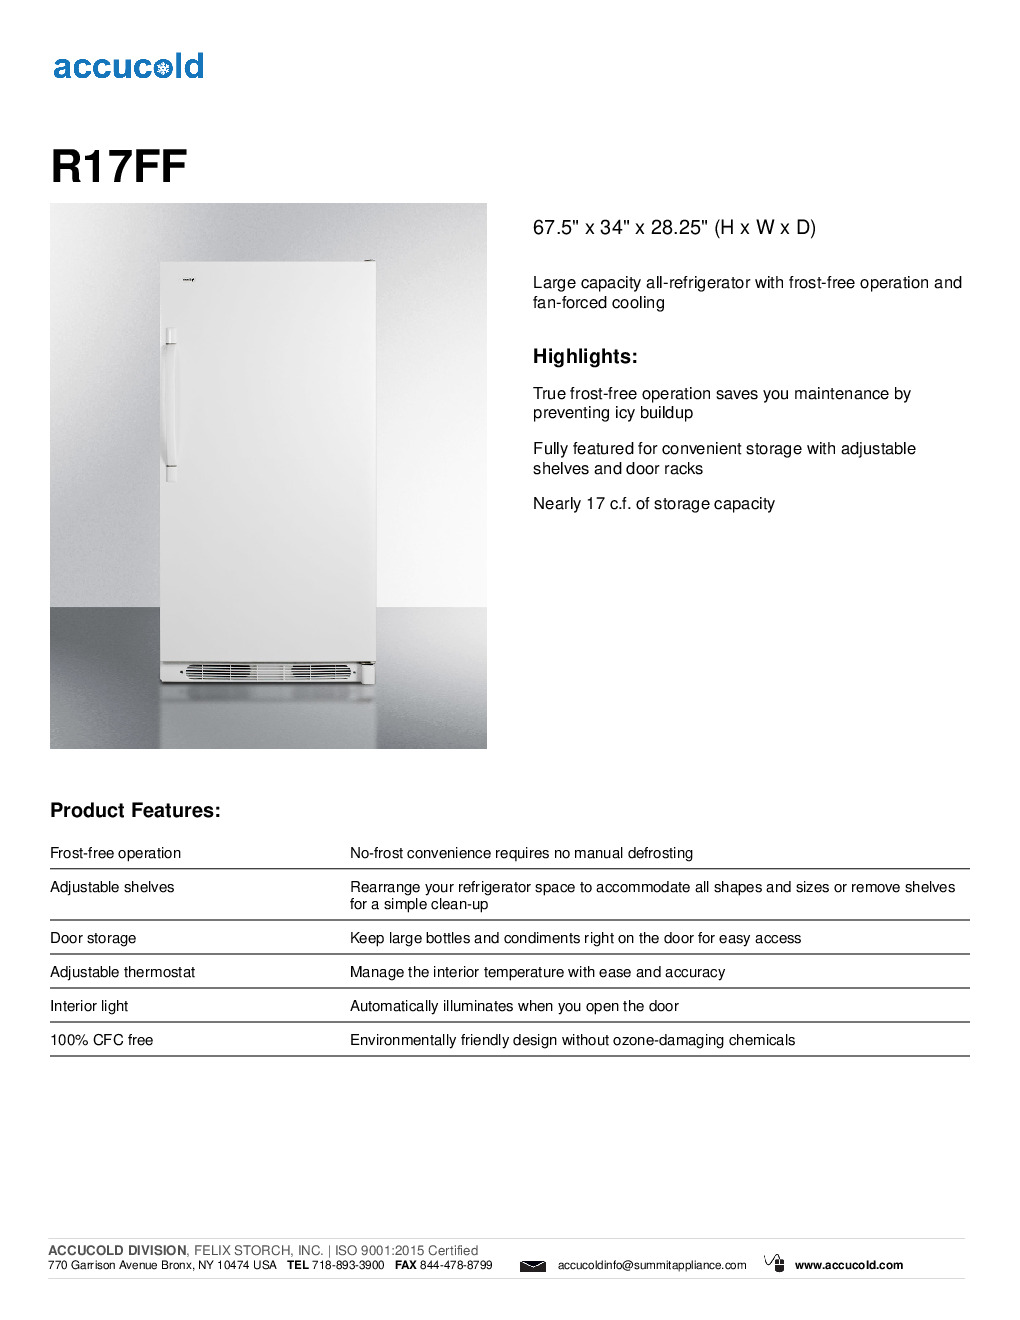 Summit R17FF Reach-In Refrigerator